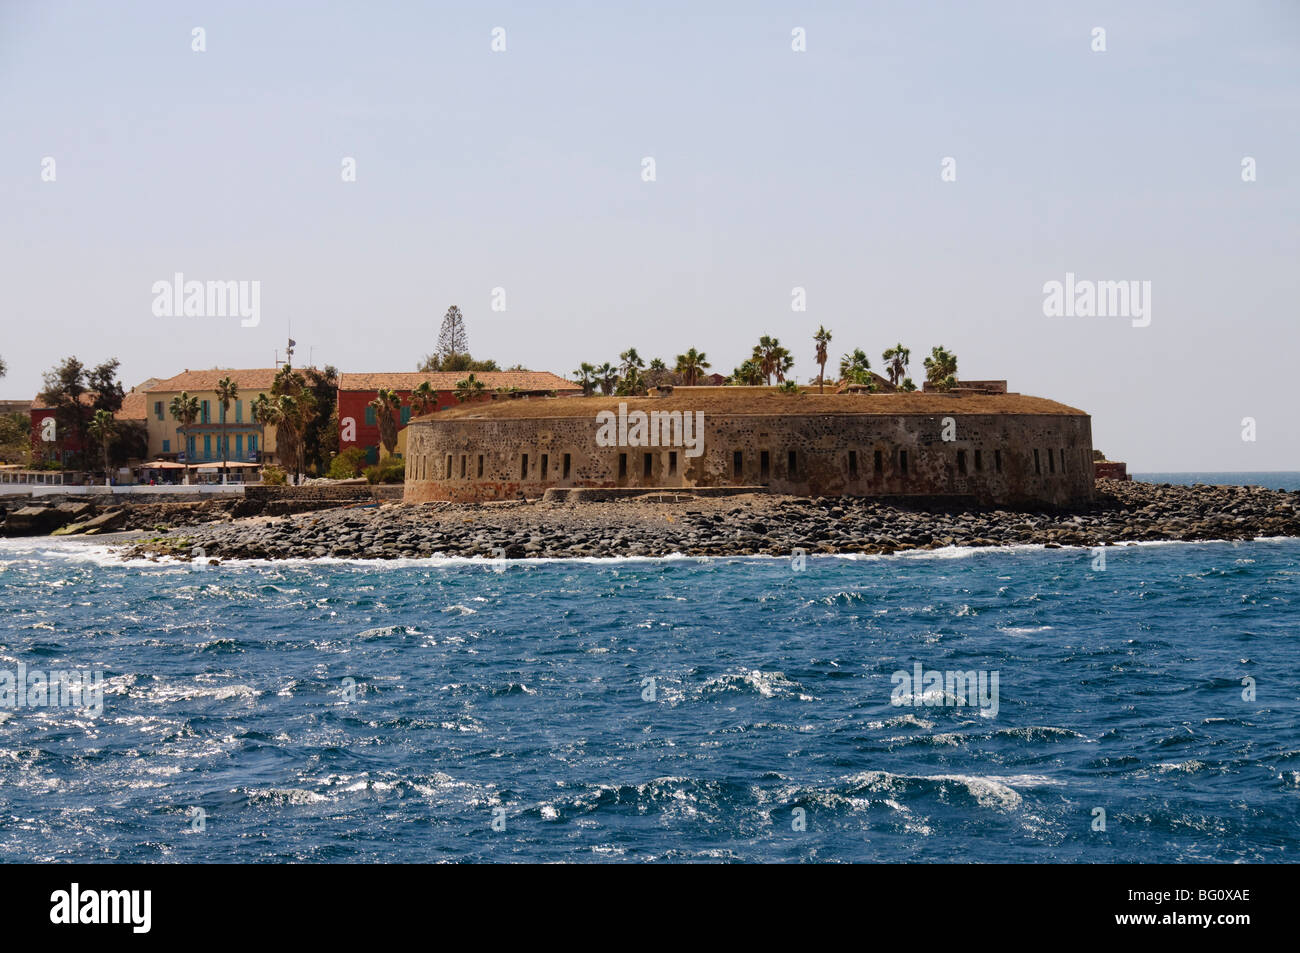 L'île de Gorée célèbre pour son rôle dans l'esclavage, UNESCO World Heritage Site, près de Dakar, Sénégal, Afrique de l'Ouest, l'Afrique Banque D'Images